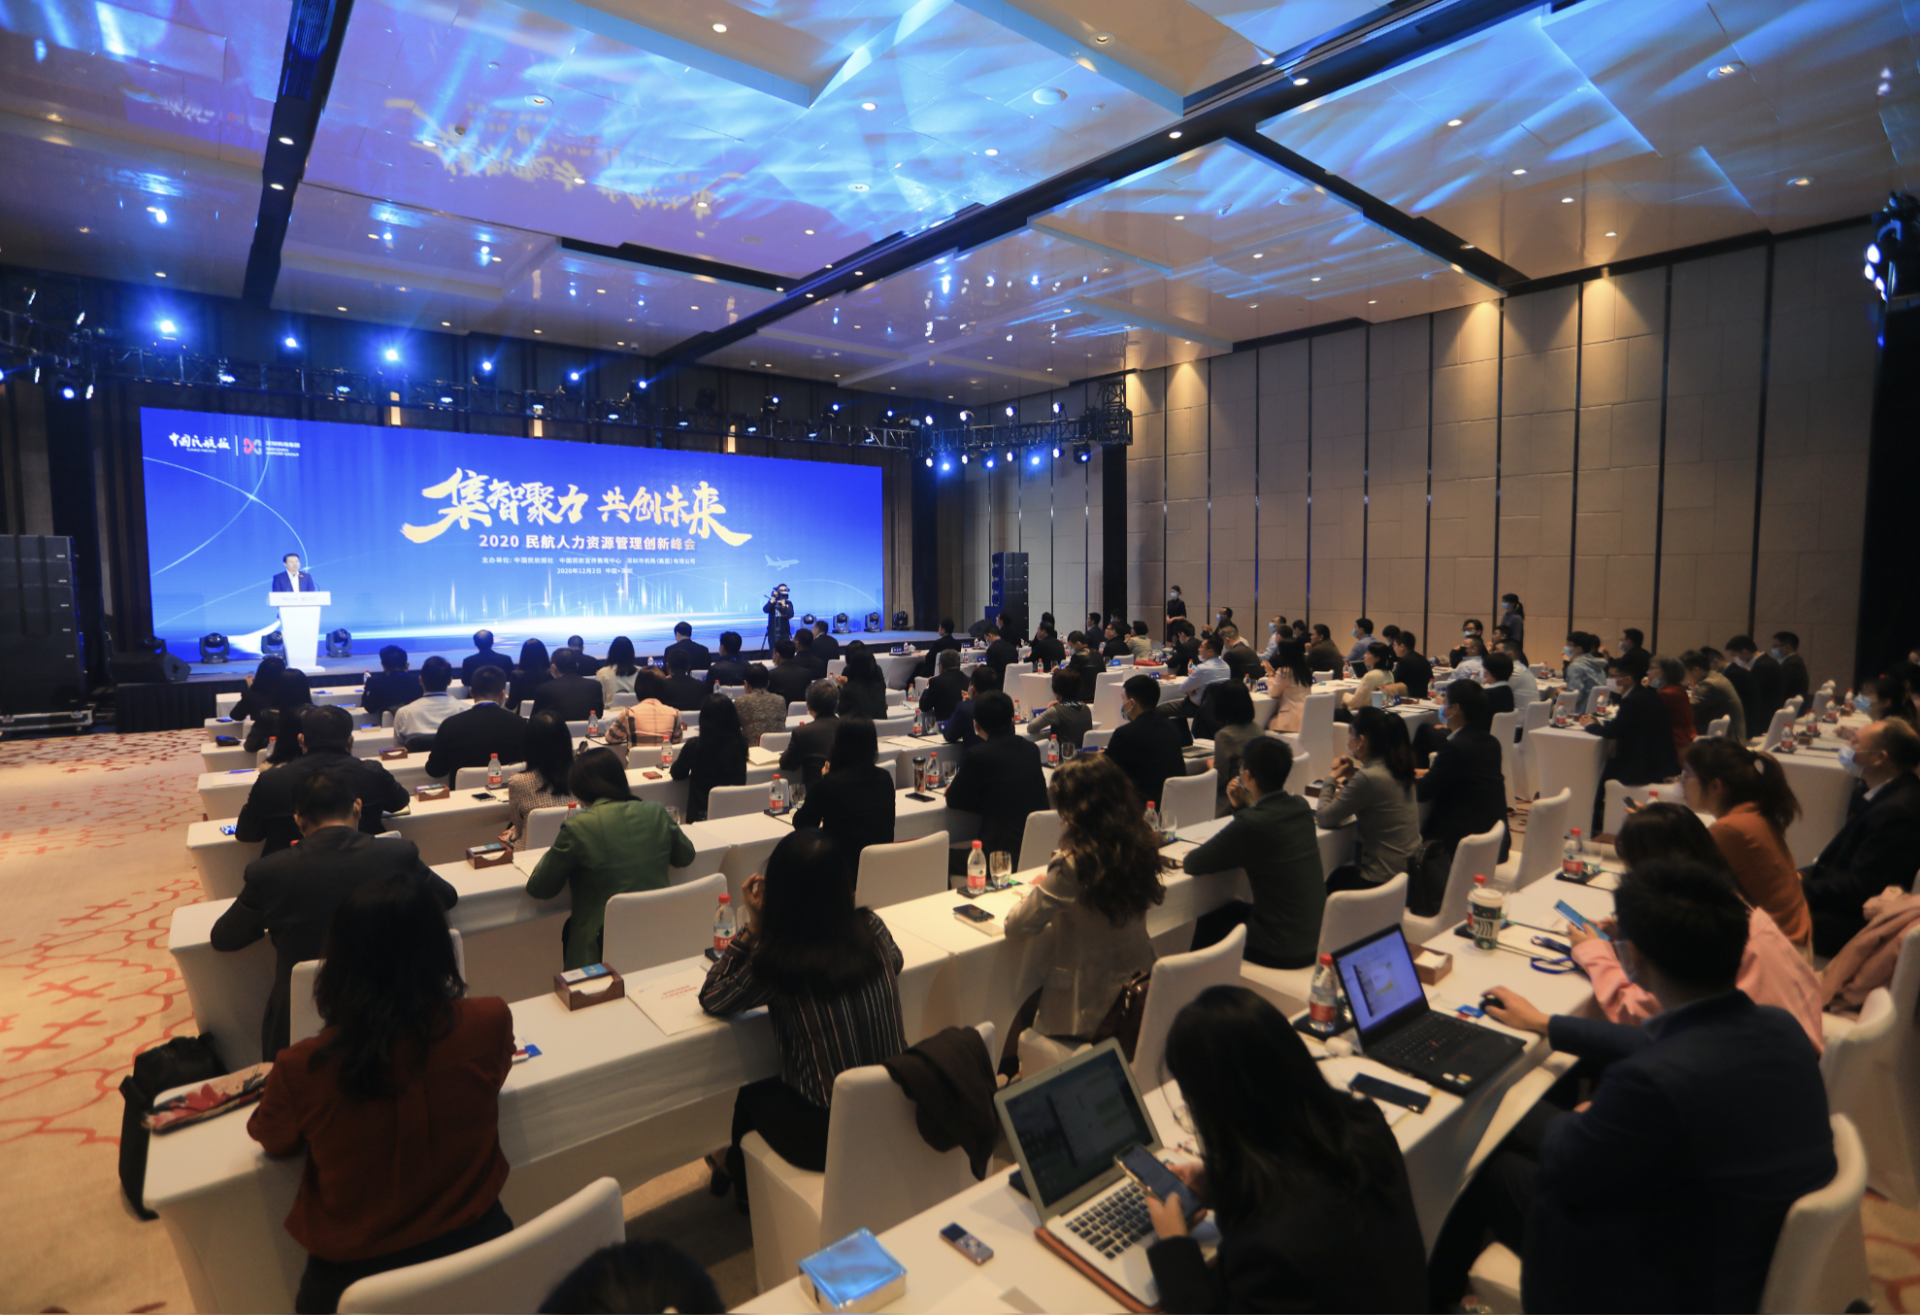 深圳机场集团发布《人力资源发展纲要》  系首家对外发布该类纲要的民航企业